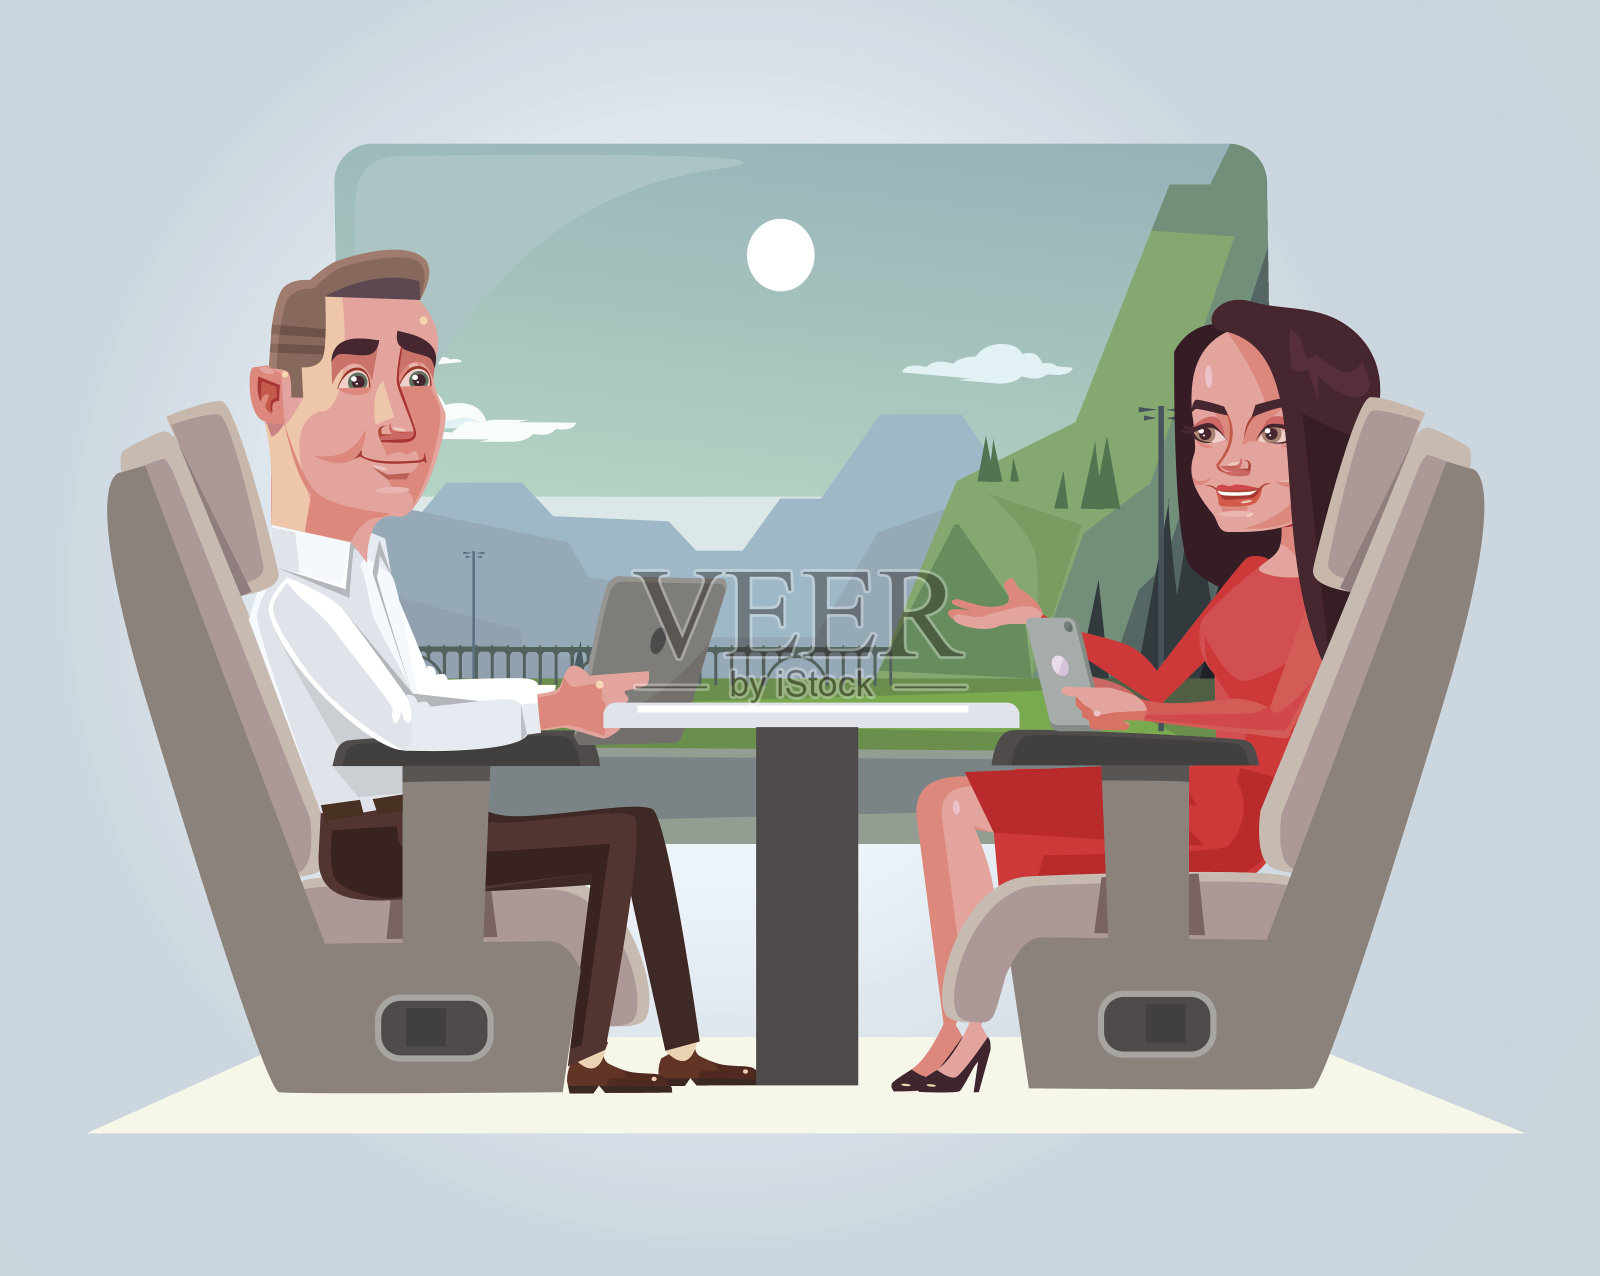 快乐微笑的商人男女人物在火车上交谈。旅游的概念插画图片素材